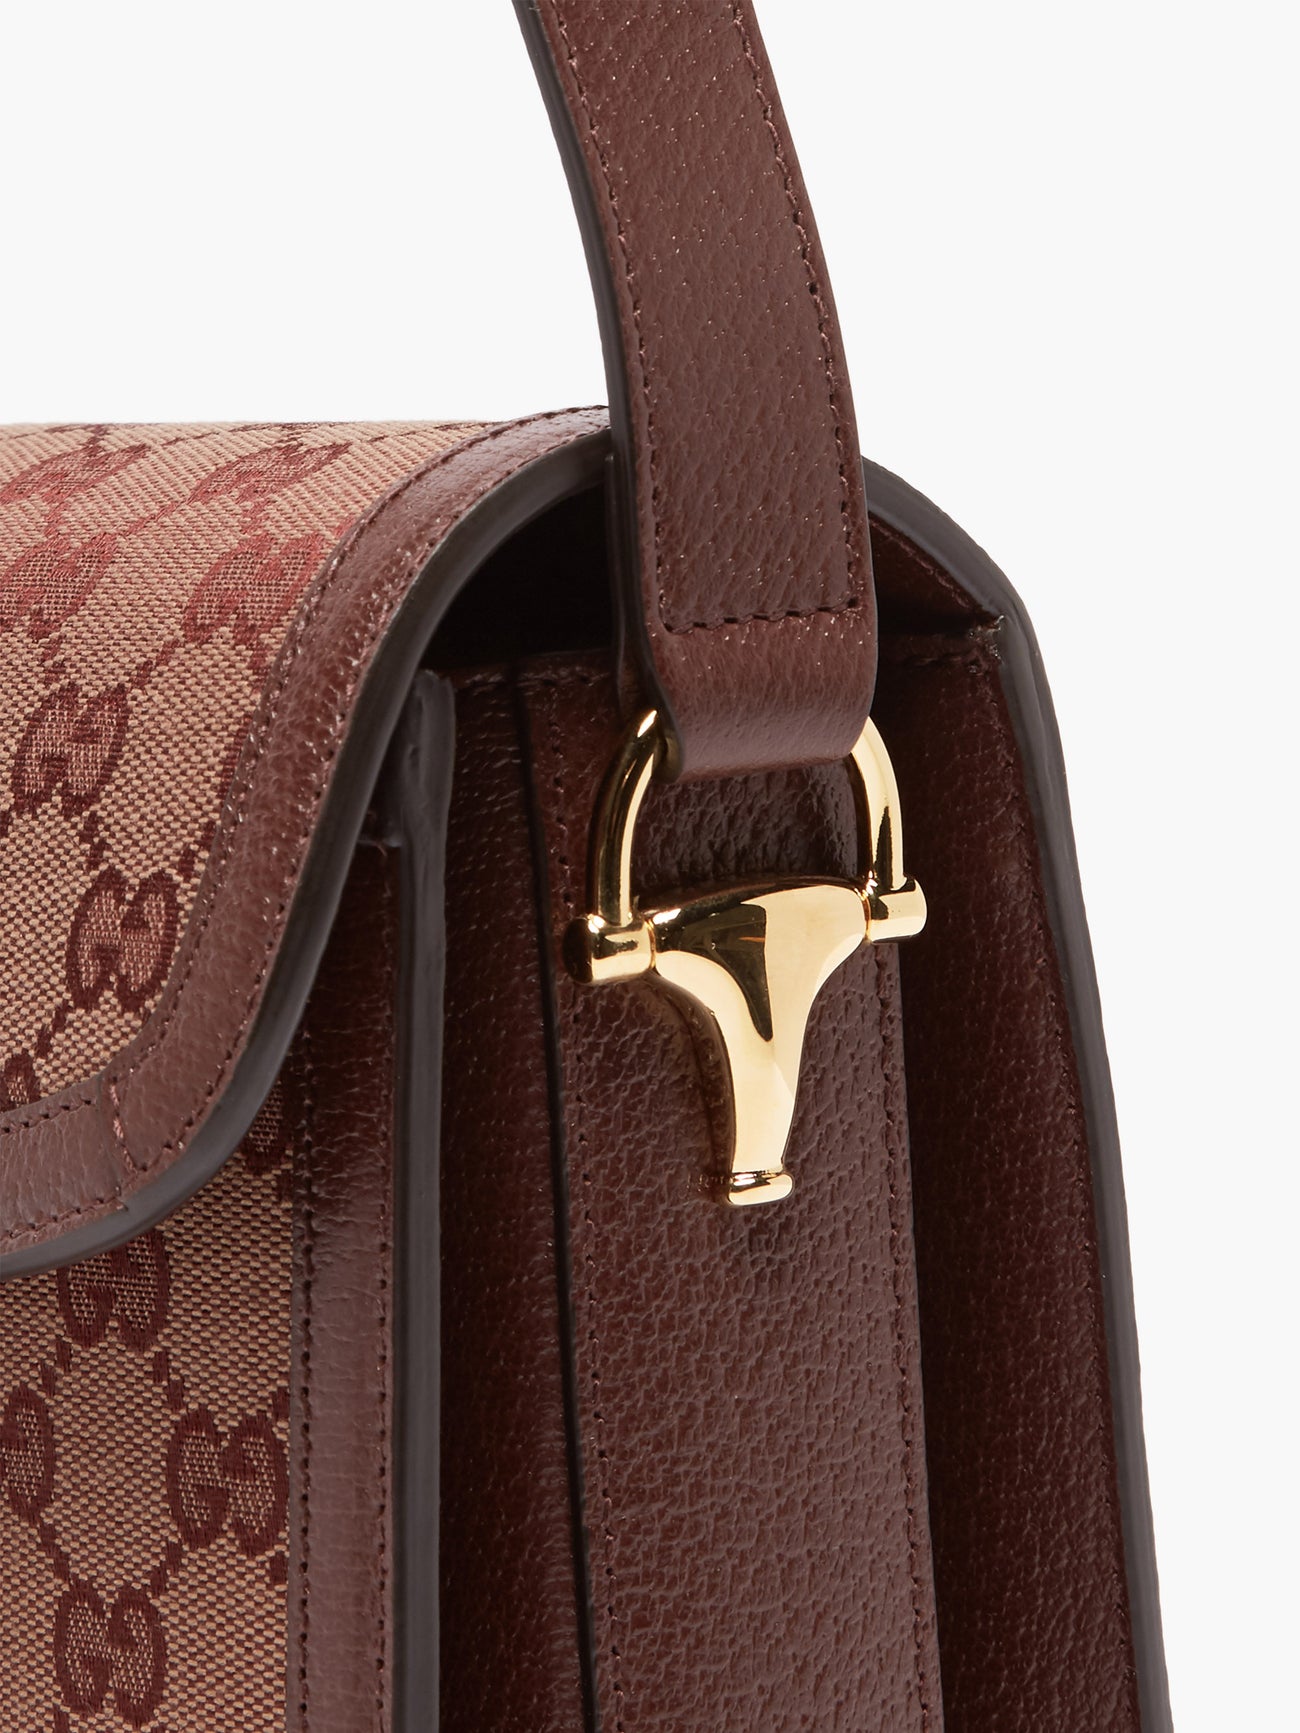 Gucci 1955 Horsebit Supreme Shoulder Bag in Burgundy